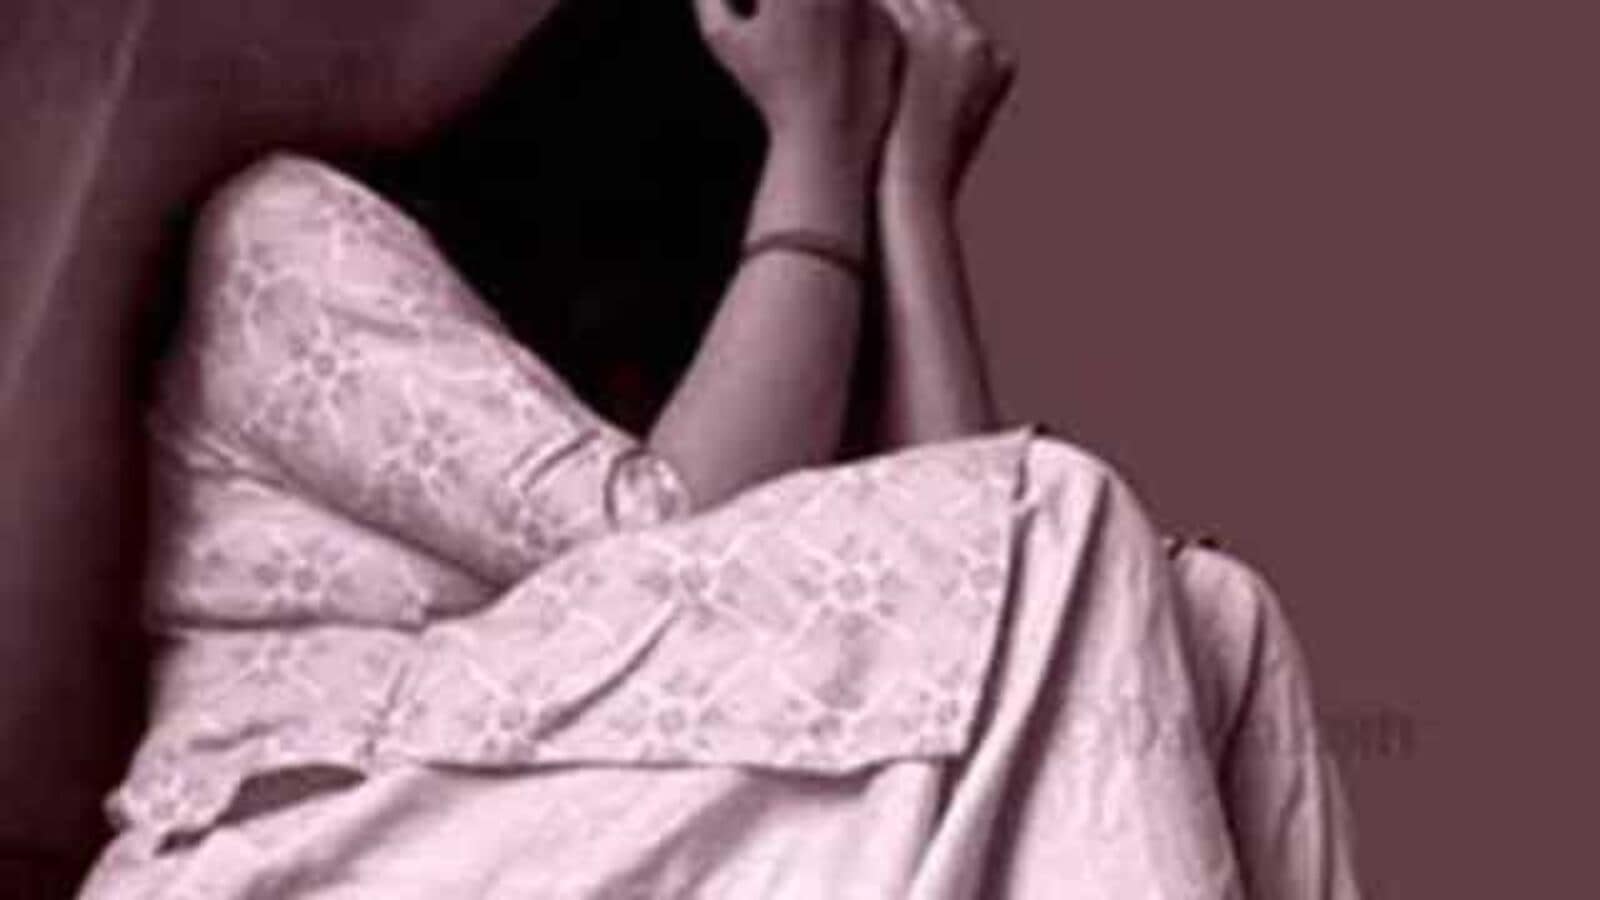 Pune Rape Crime : लग्नाच्या आमिषाने चौदा वर्षीय मुलीचे अपहरण करुन बलात्कार; तिघांवर गुन्हा, दोघांना अटक